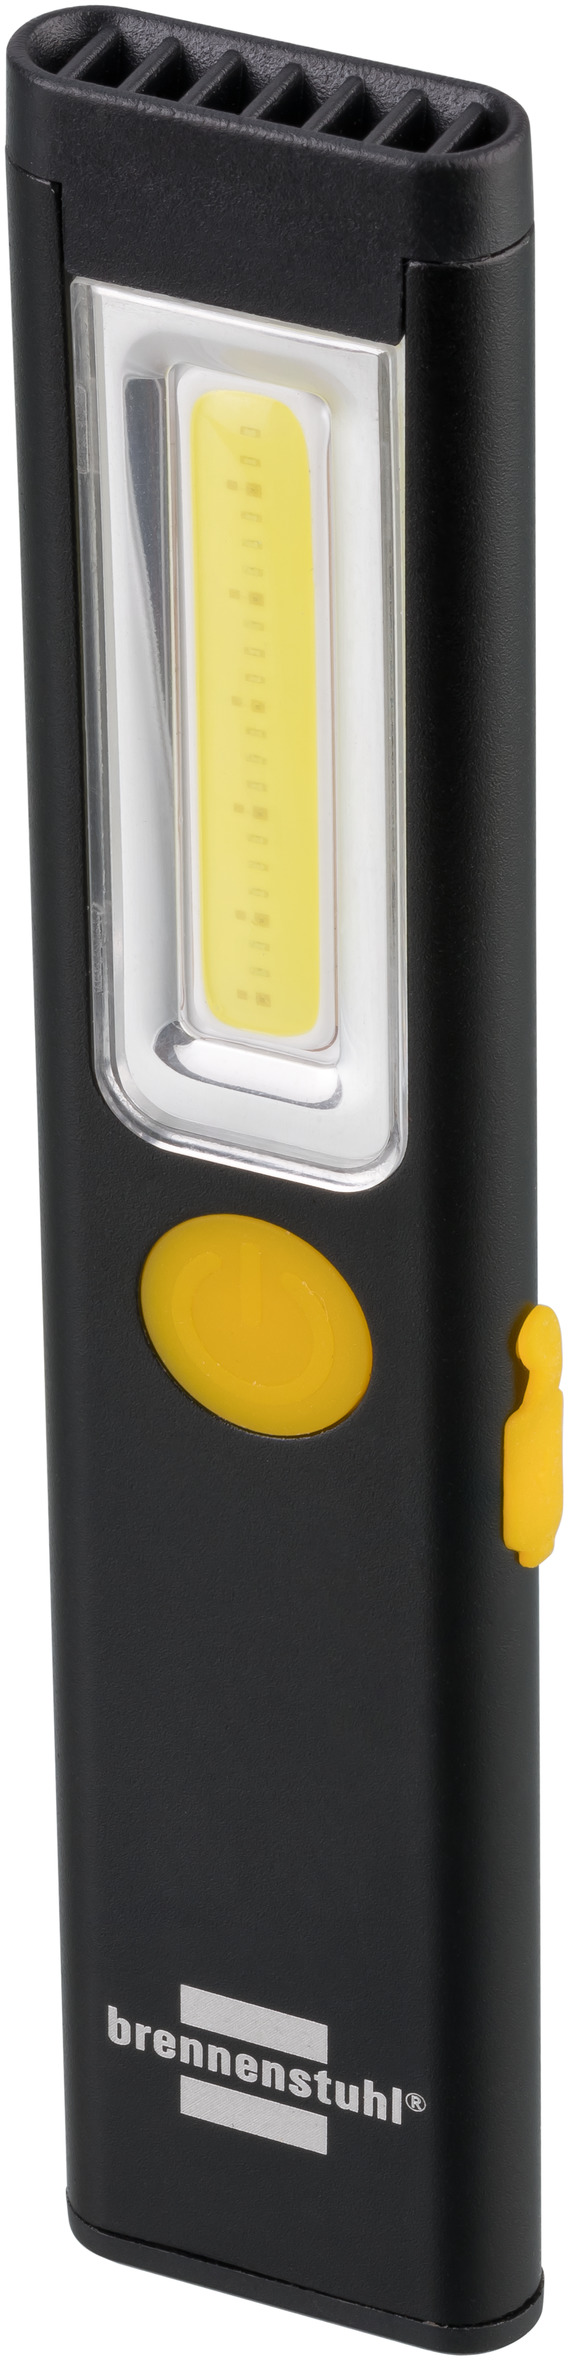 Brennenstuhl Lampe de poche LED avec batterie rechargeable, mini